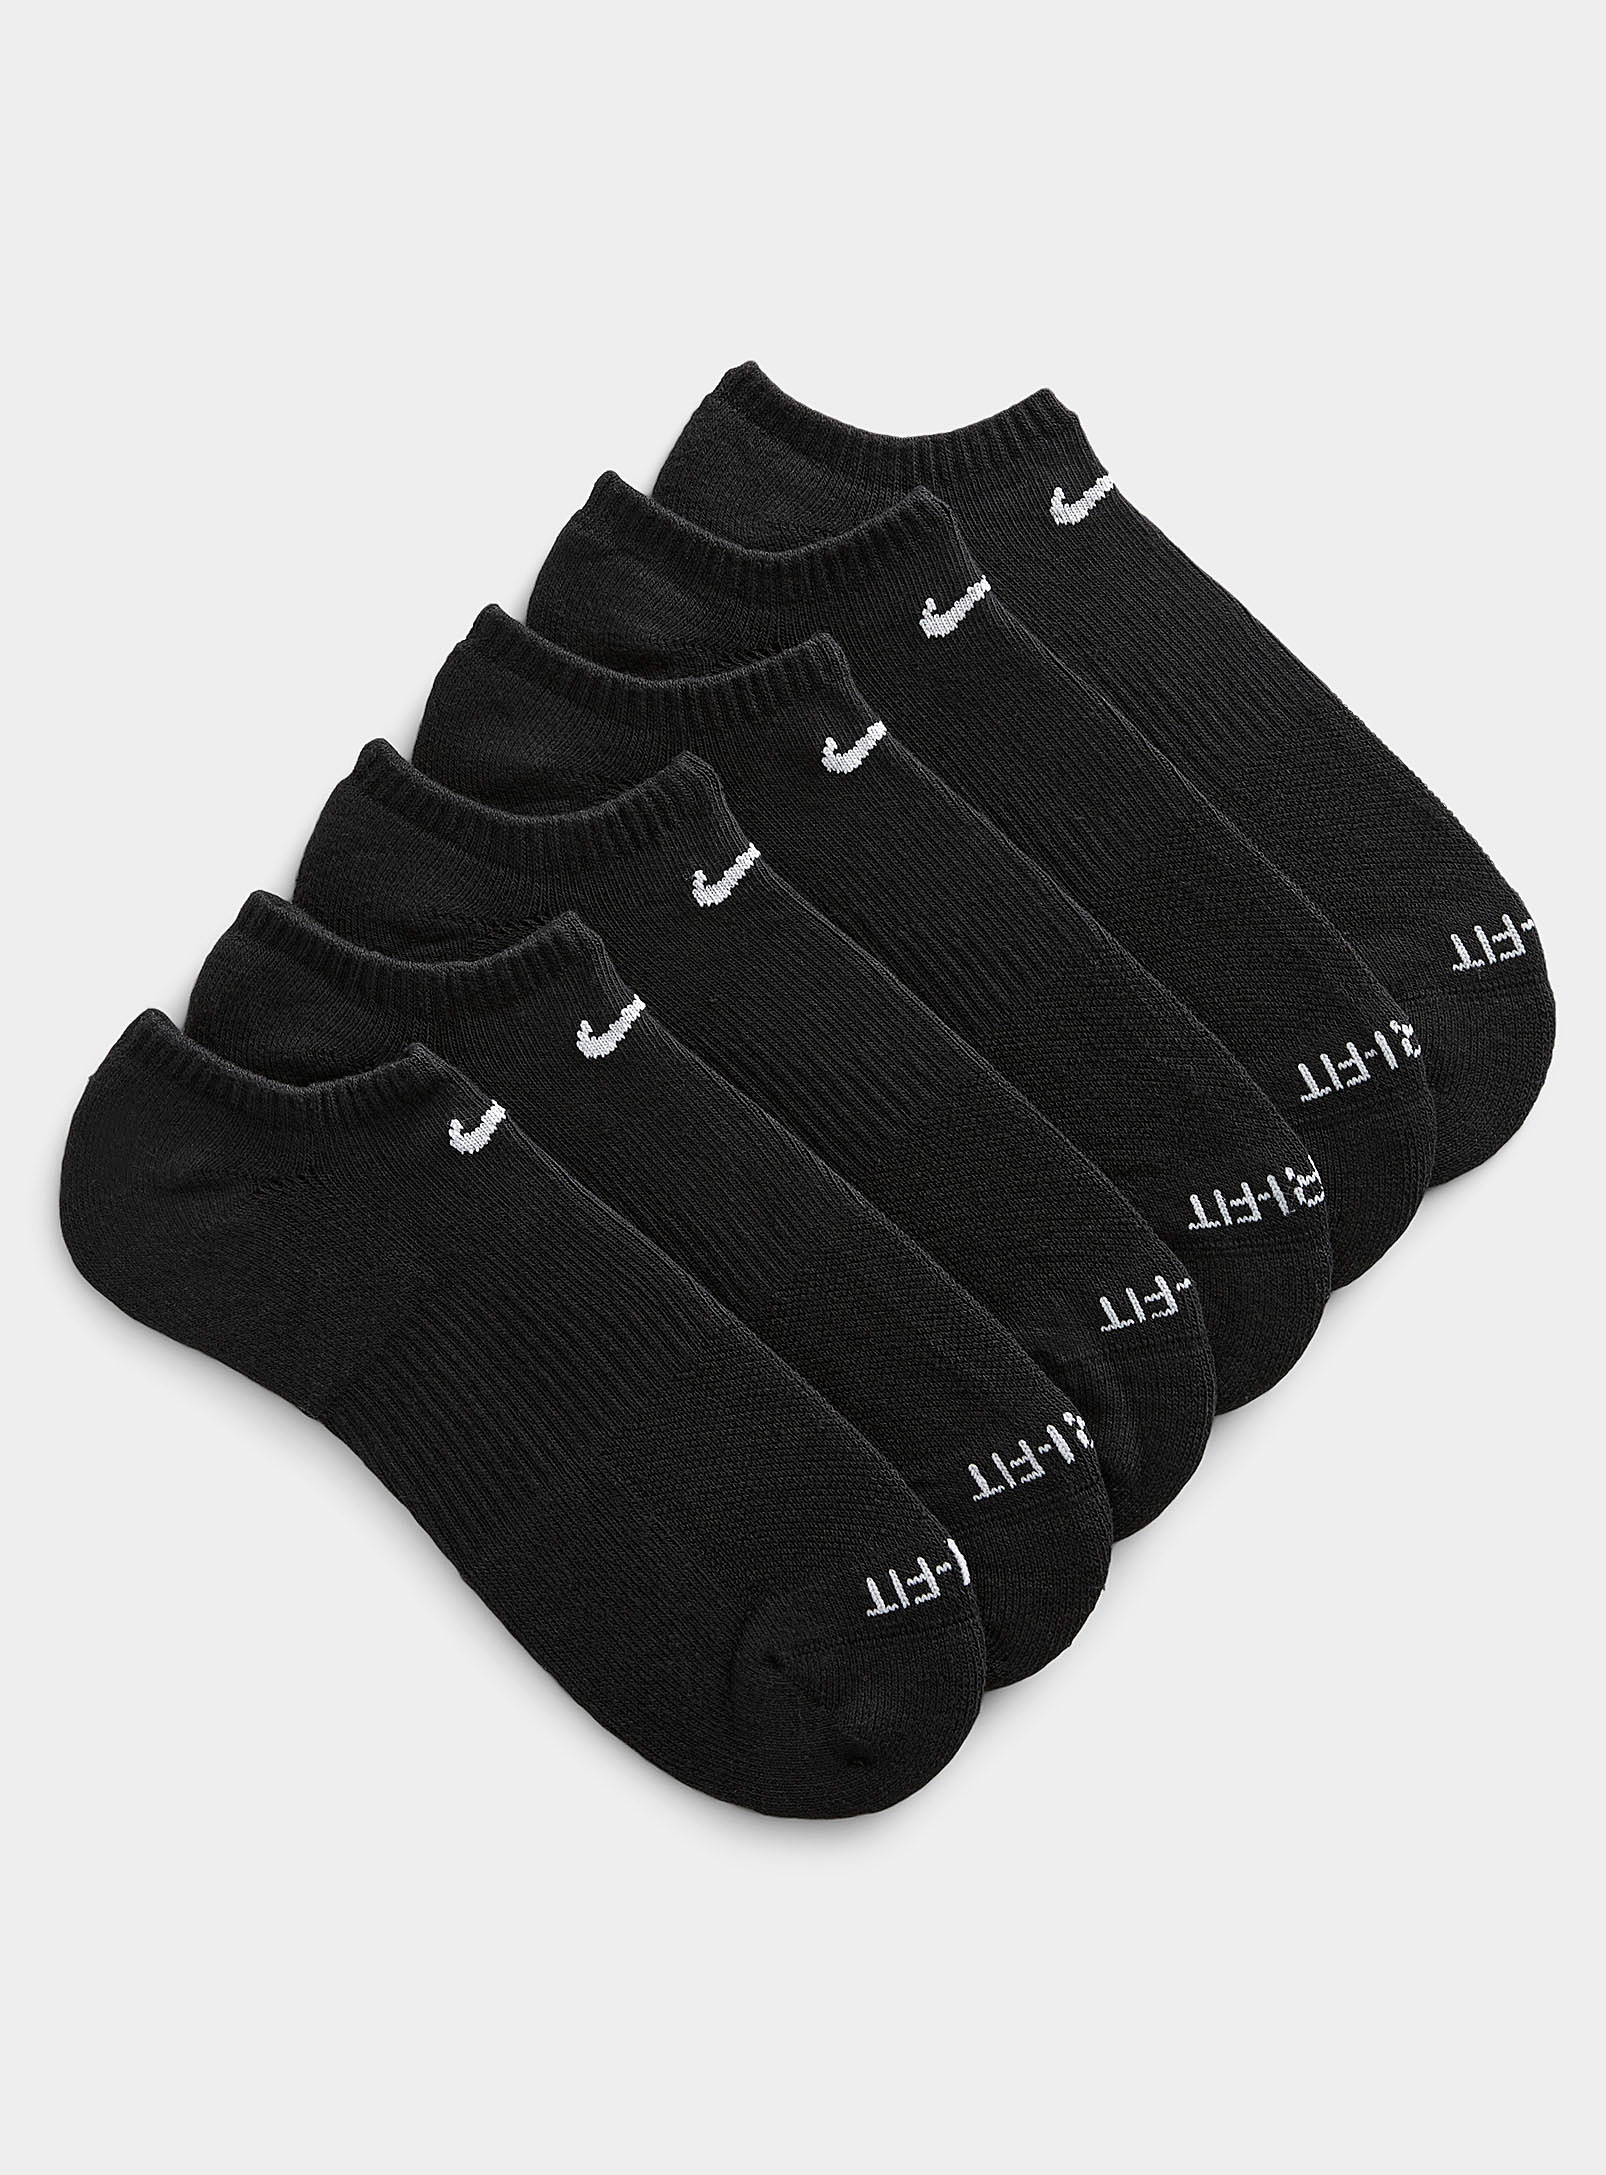 Nike Everyday Plus Ped Socks 6-pack In Black